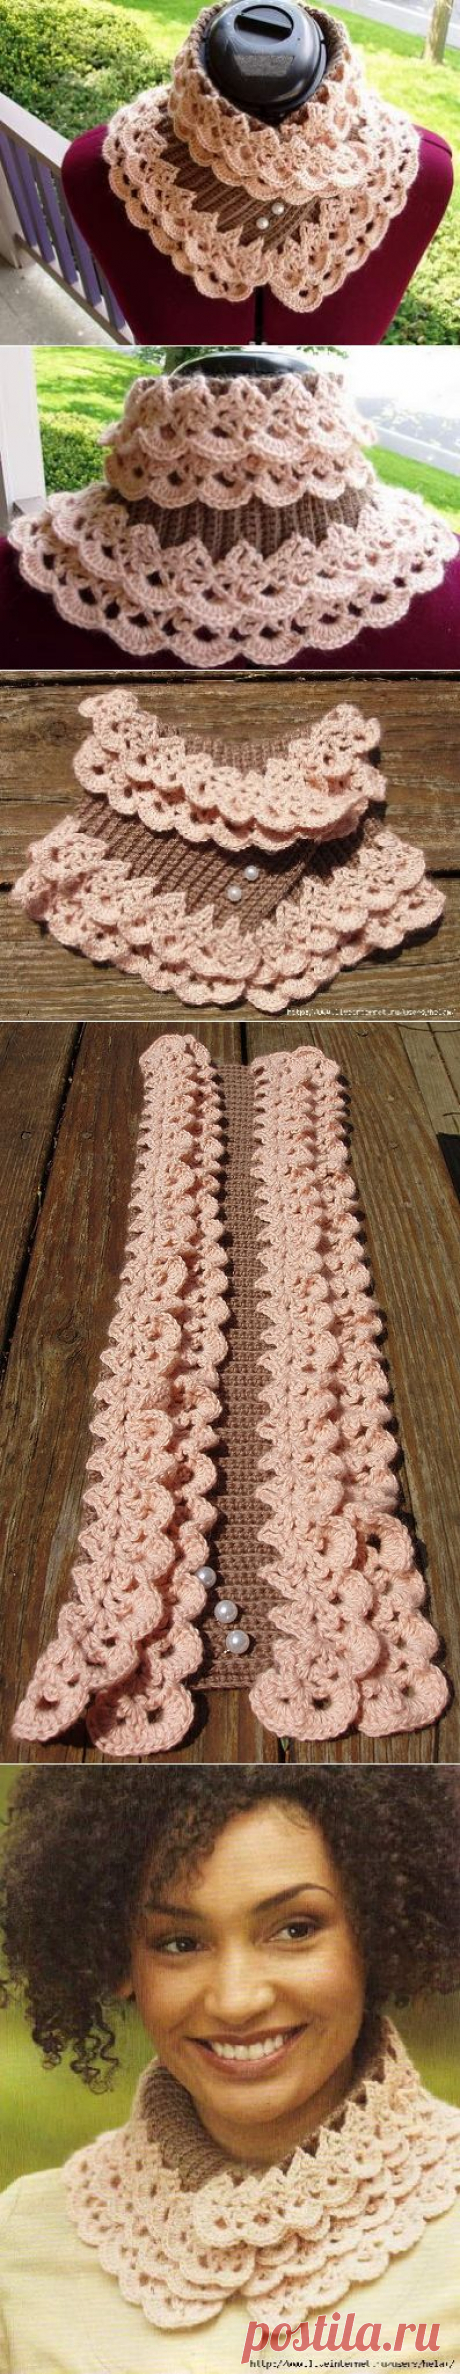 Ажурный шарф-воротник для женщины: схема вязания спицами, крючком.